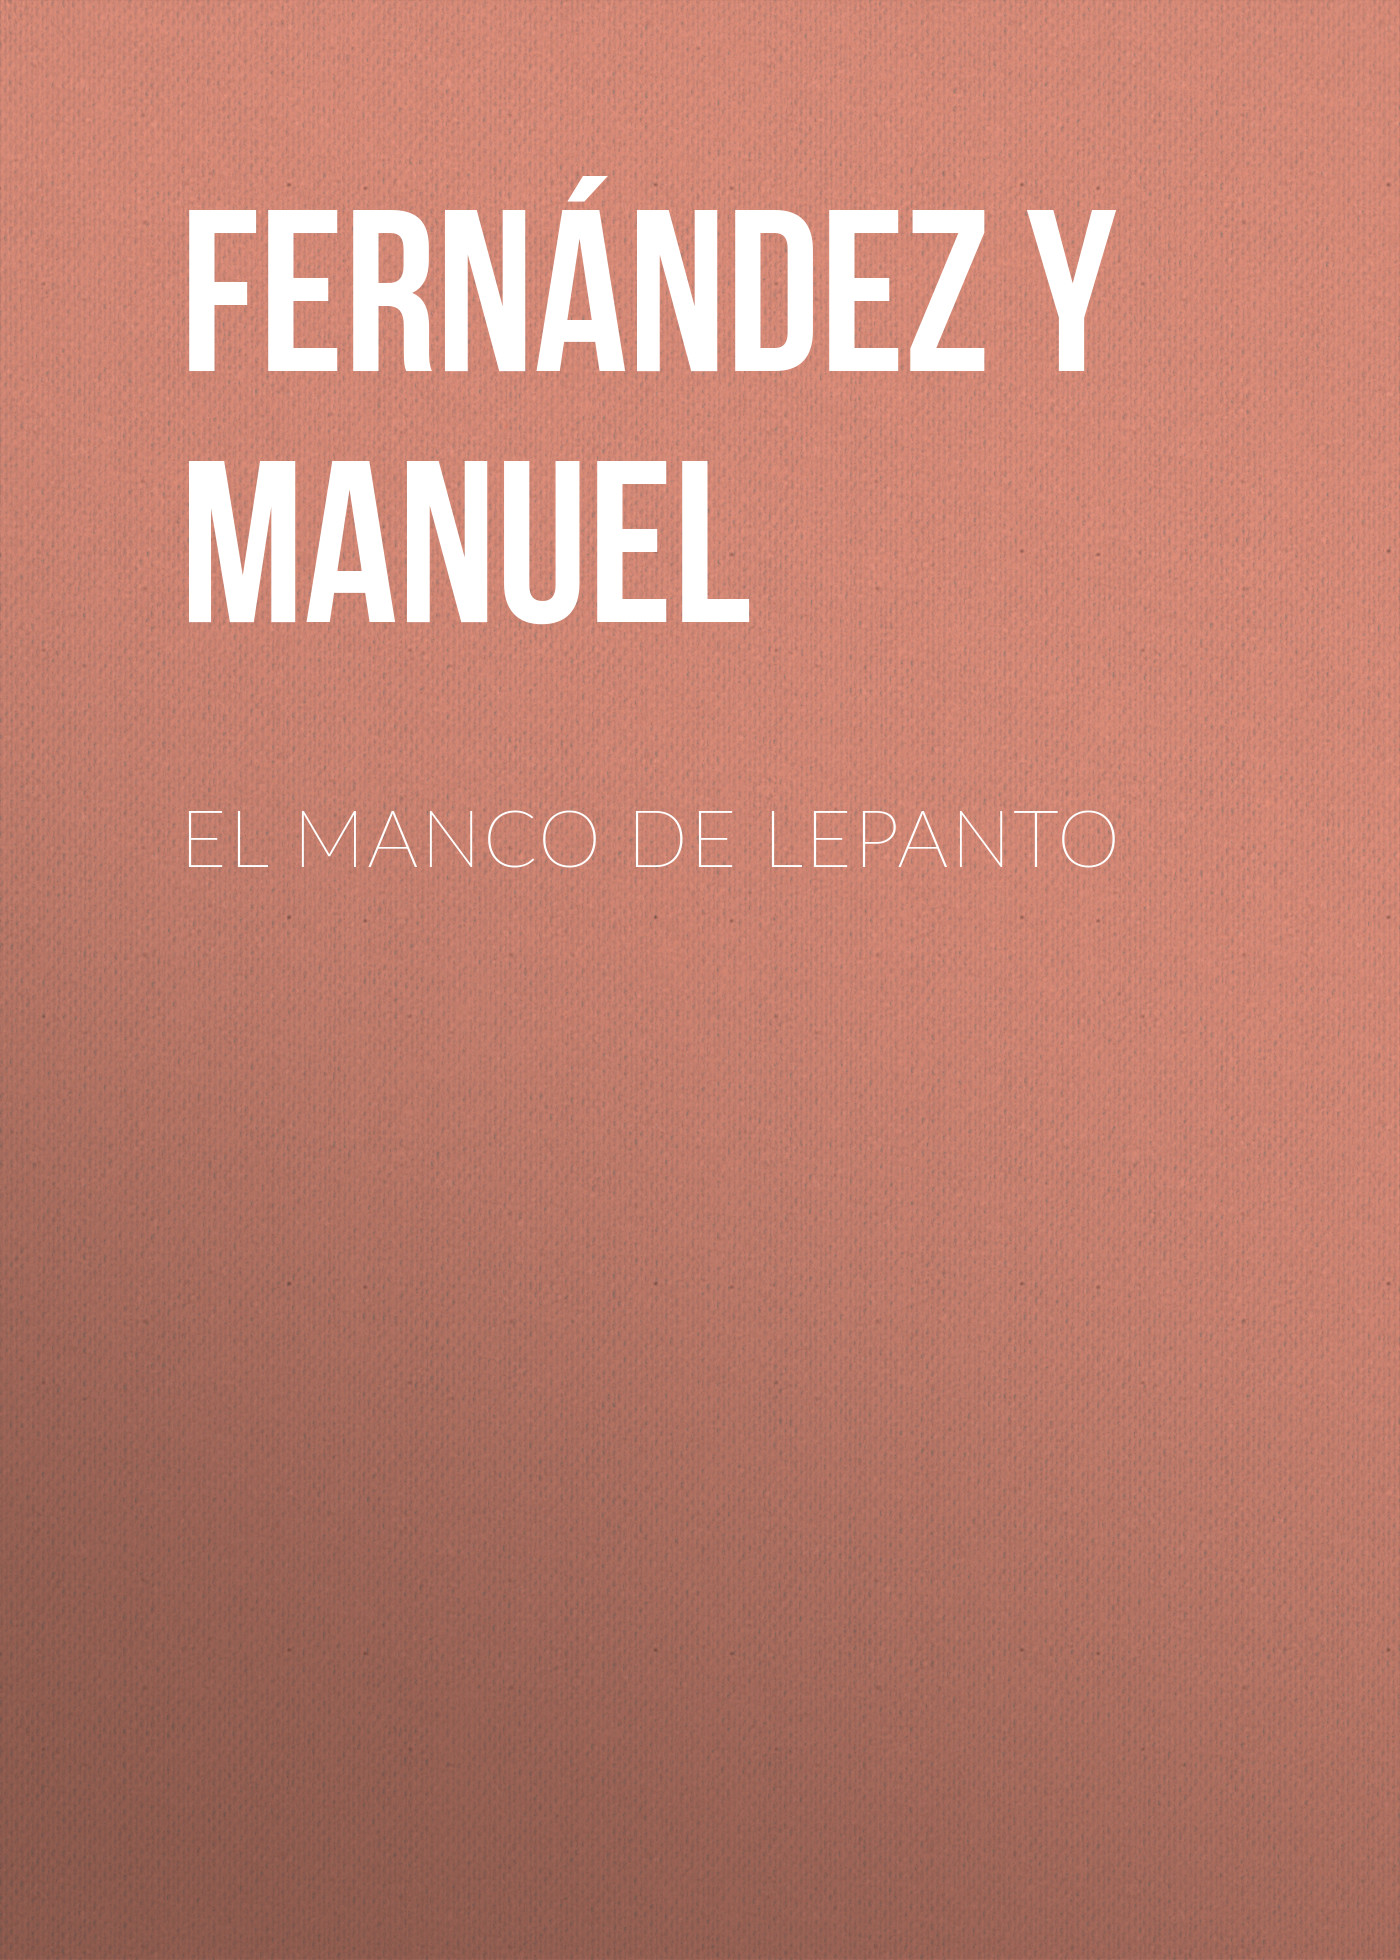 Книга El manco de Lepanto из серии , созданная Manuel Fernández y González, может относится к жанру Зарубежная старинная литература, Зарубежная классика. Стоимость электронной книги El manco de Lepanto с идентификатором 24727353 составляет 0 руб.